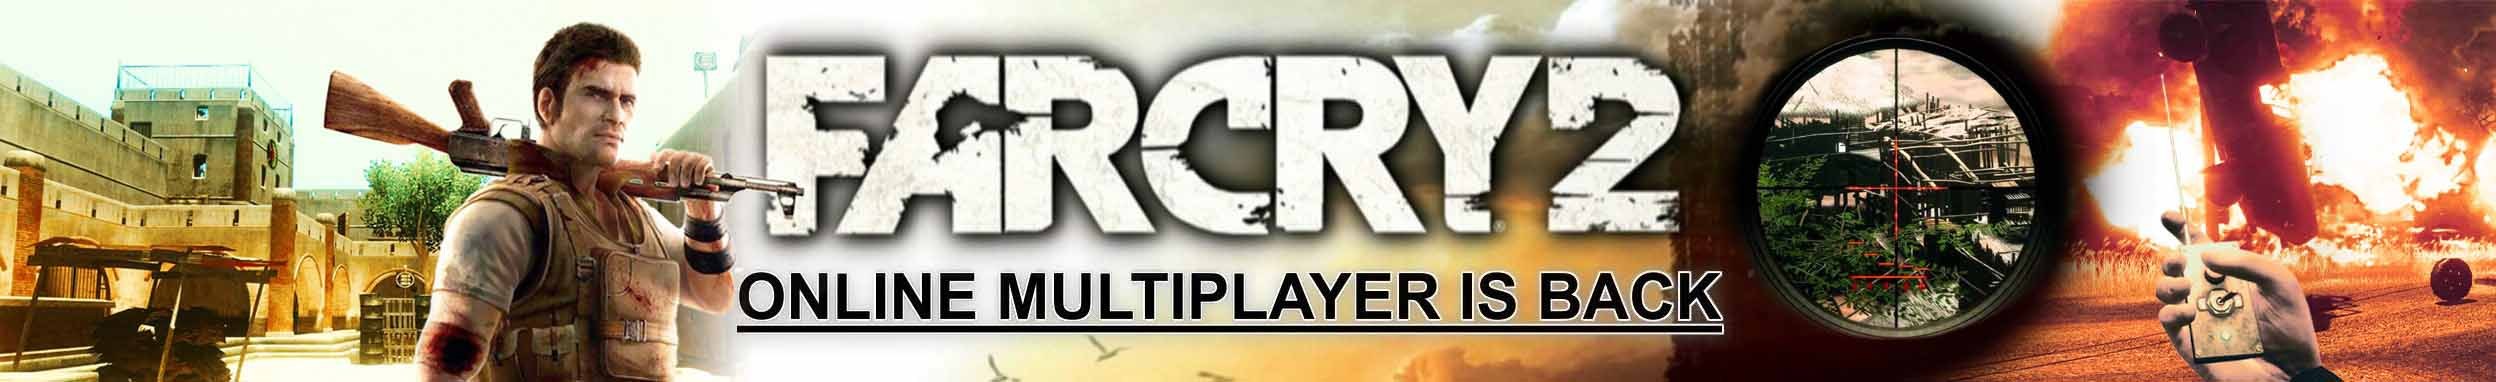 Far Cry 2 multi editor file - Far Cry 2 - ModDB